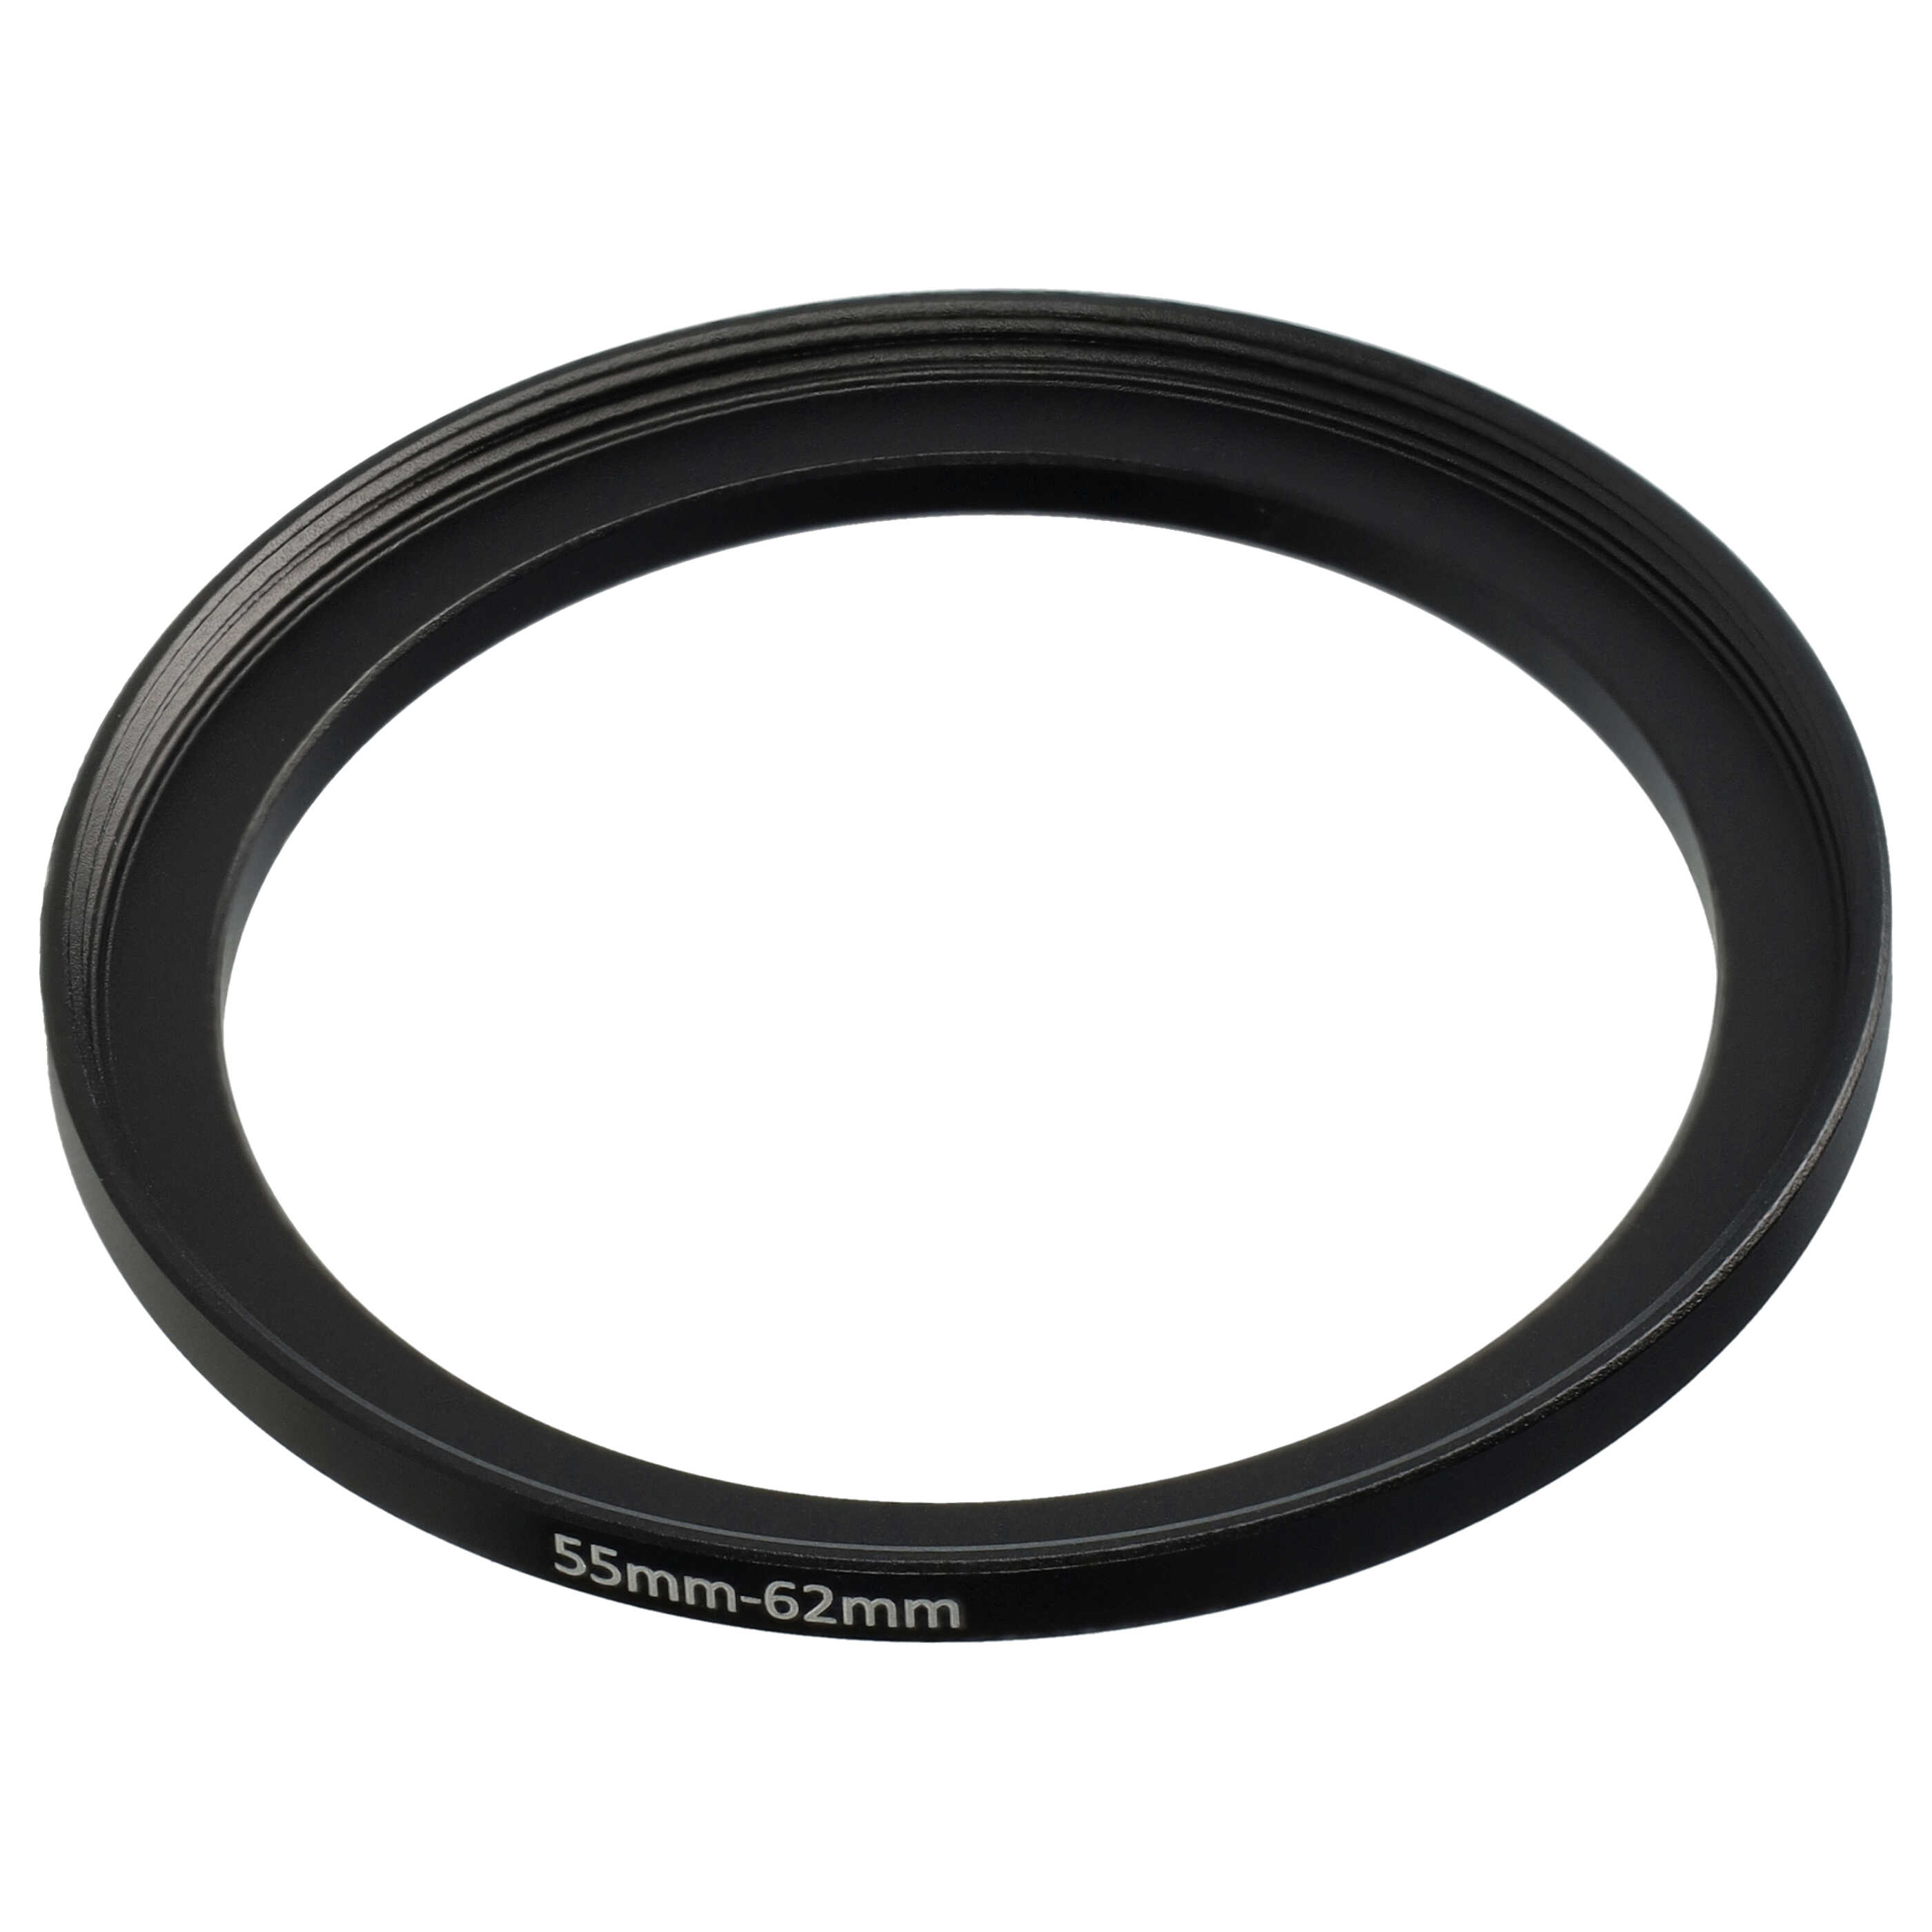 Step-Up-Ring Adapter 55 mm auf 62 mm passend für diverse Kamera-Objektive - Filteradapter